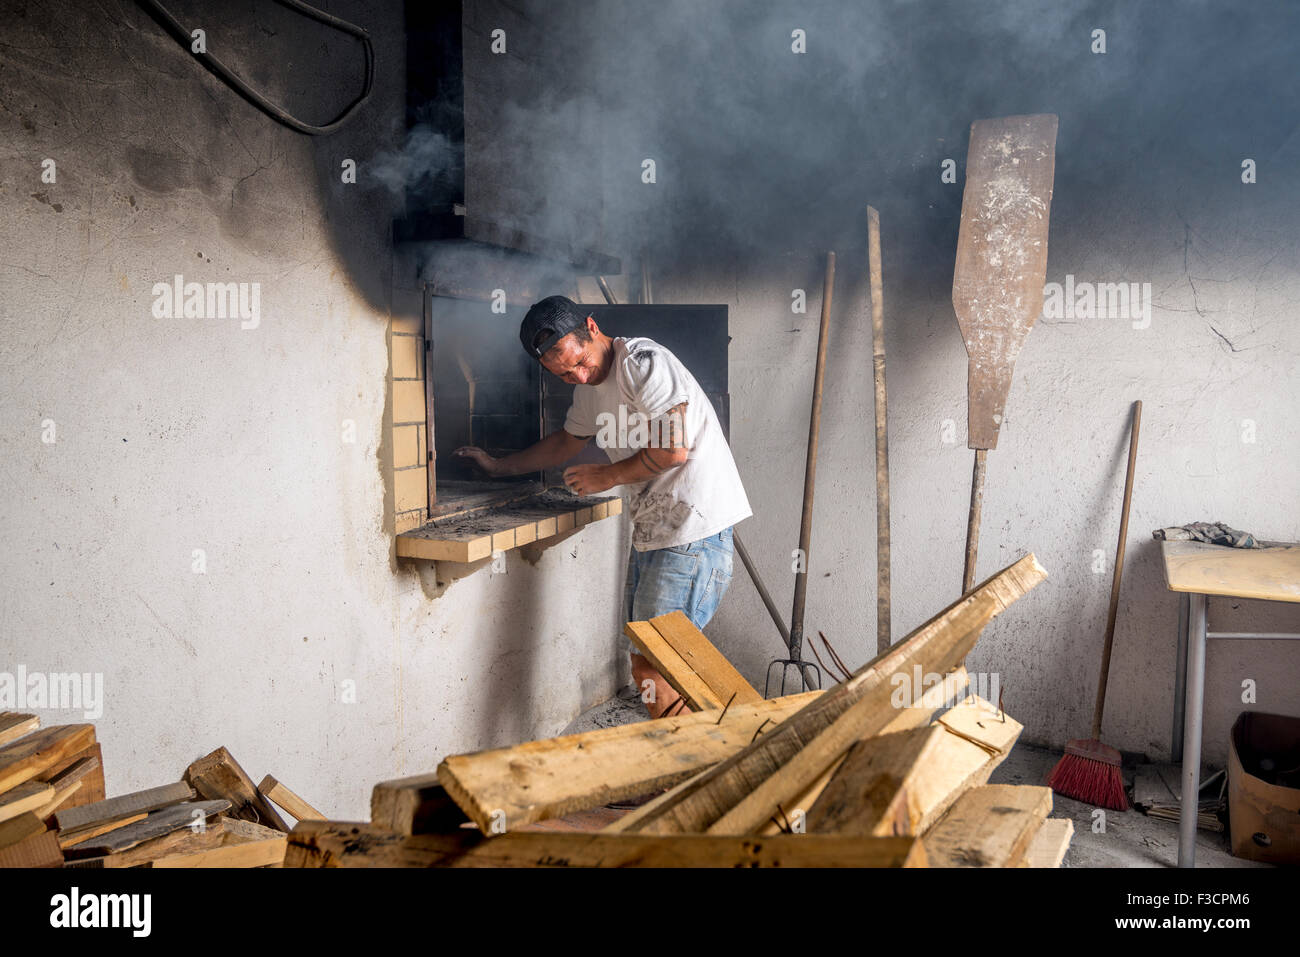 Giovani baker a partire fire all'interno del forno in pietra, causando un sacco di fumo. Foto Stock